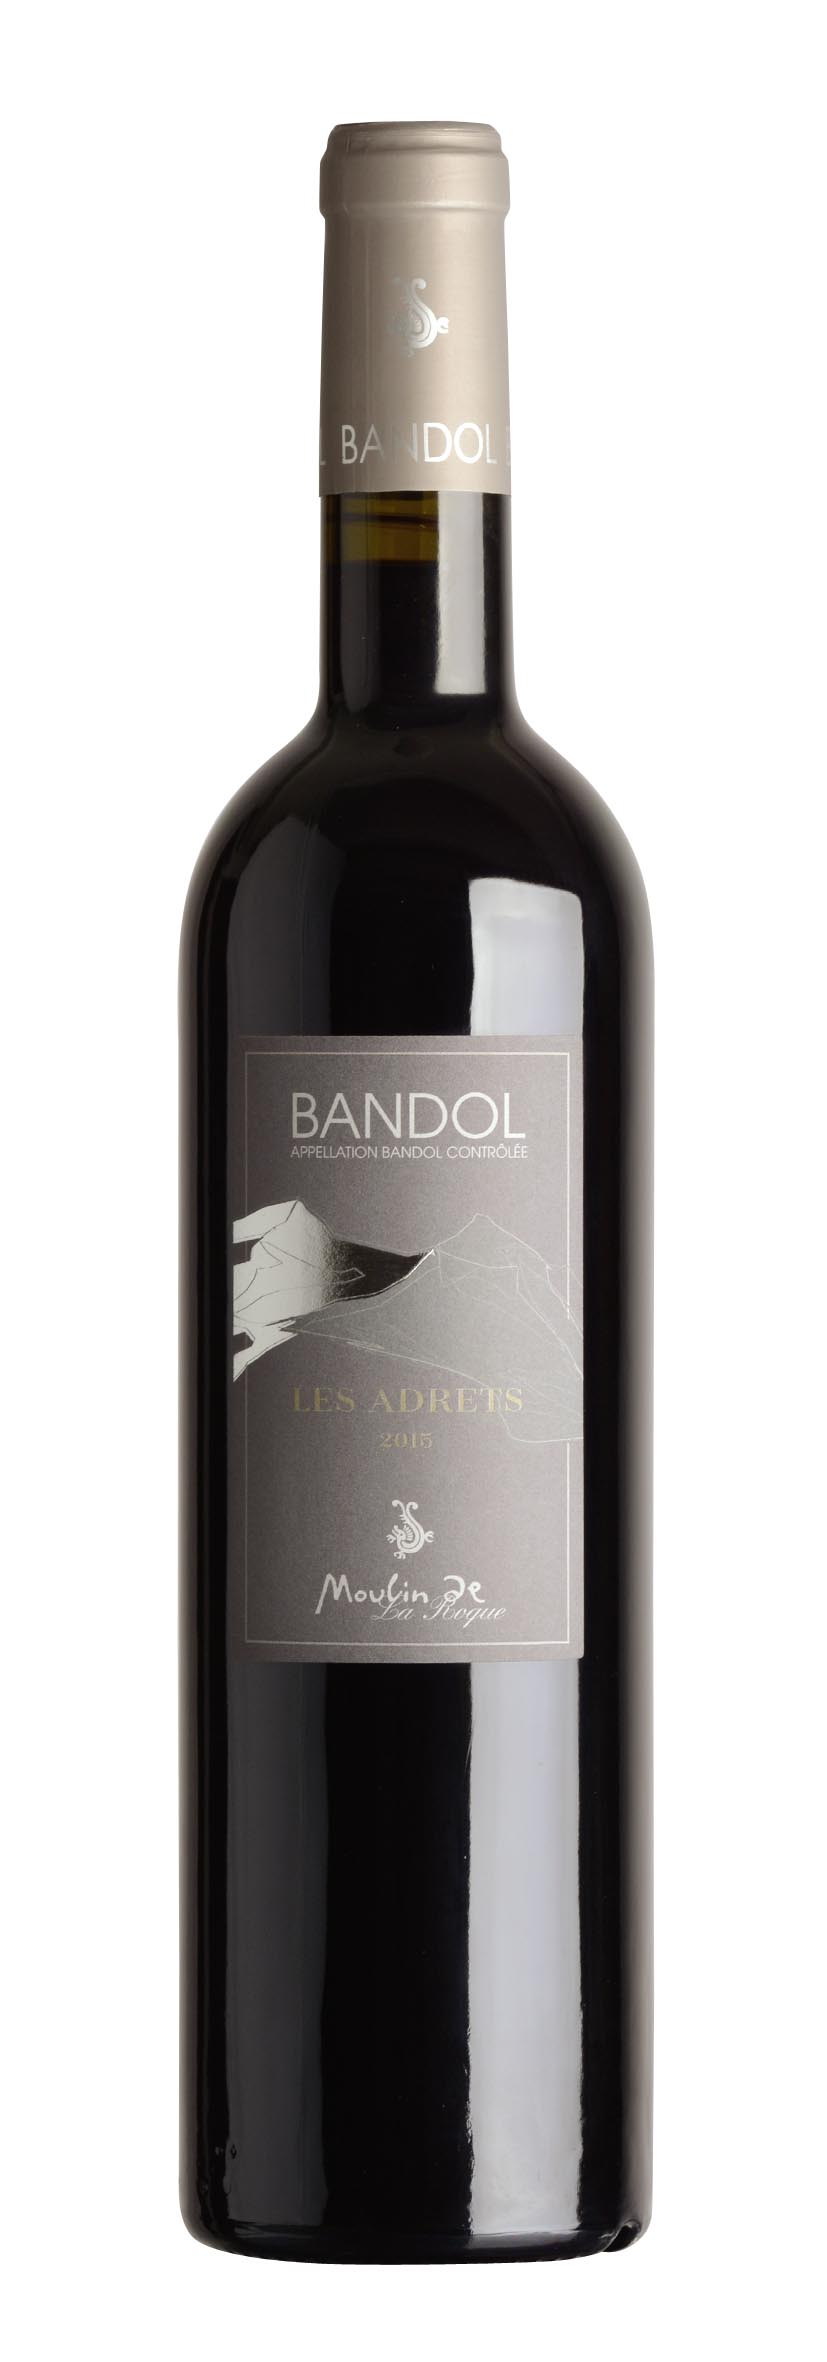 Bandol AOC Rouge Les Adrets 2015